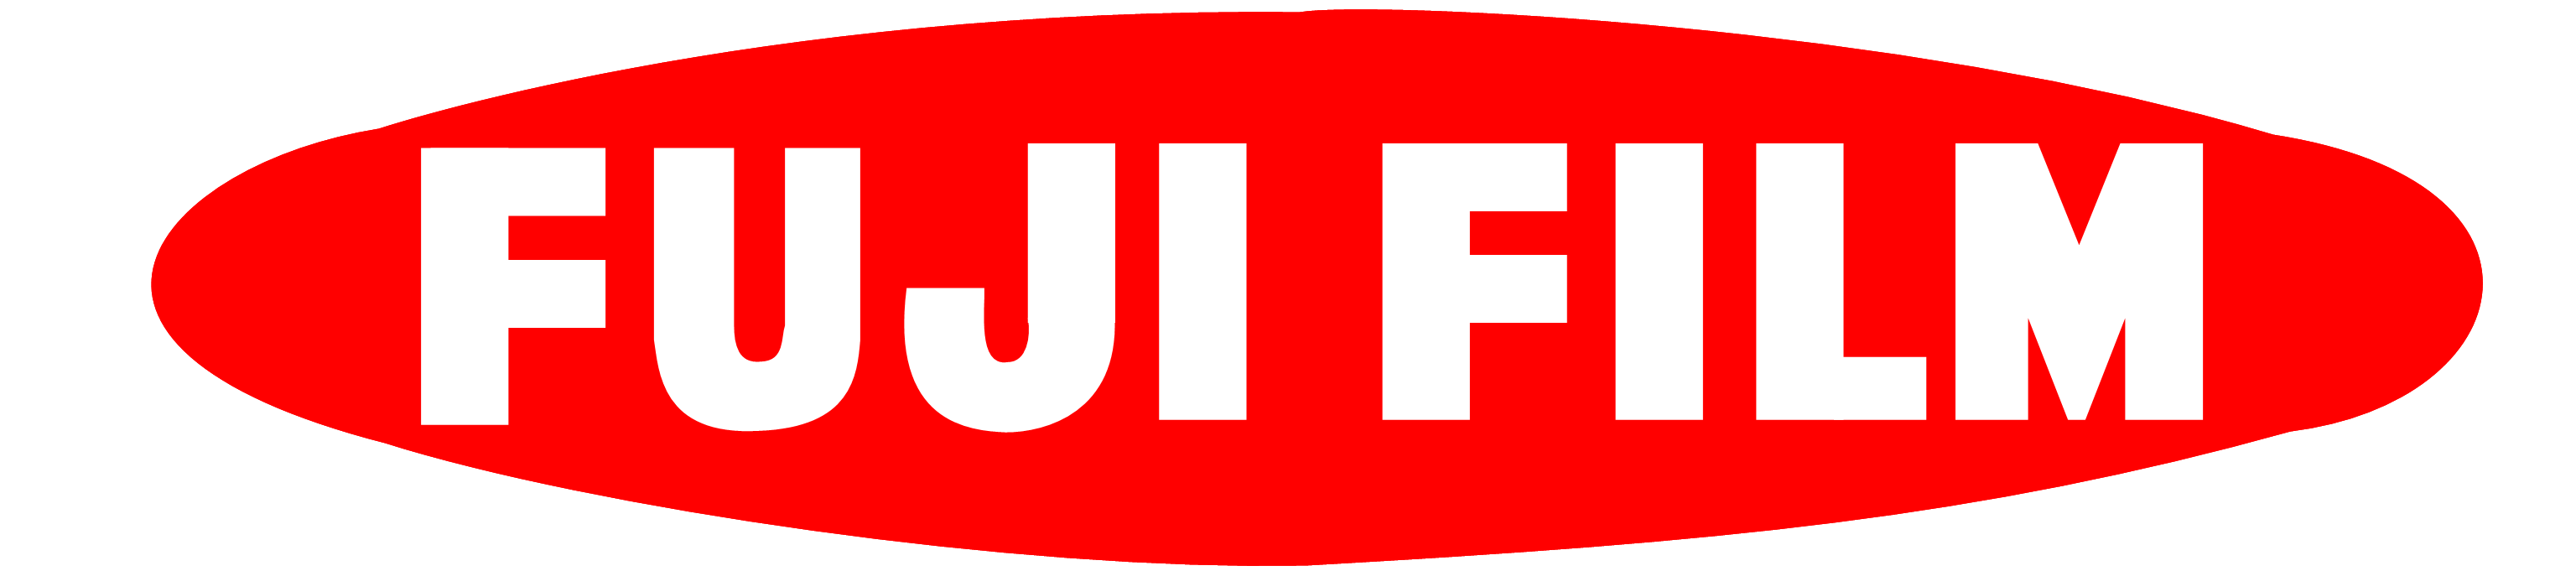 Old Fujifilm Logo - Snap Fuji Television Logo Fujifilm Logopedia photo